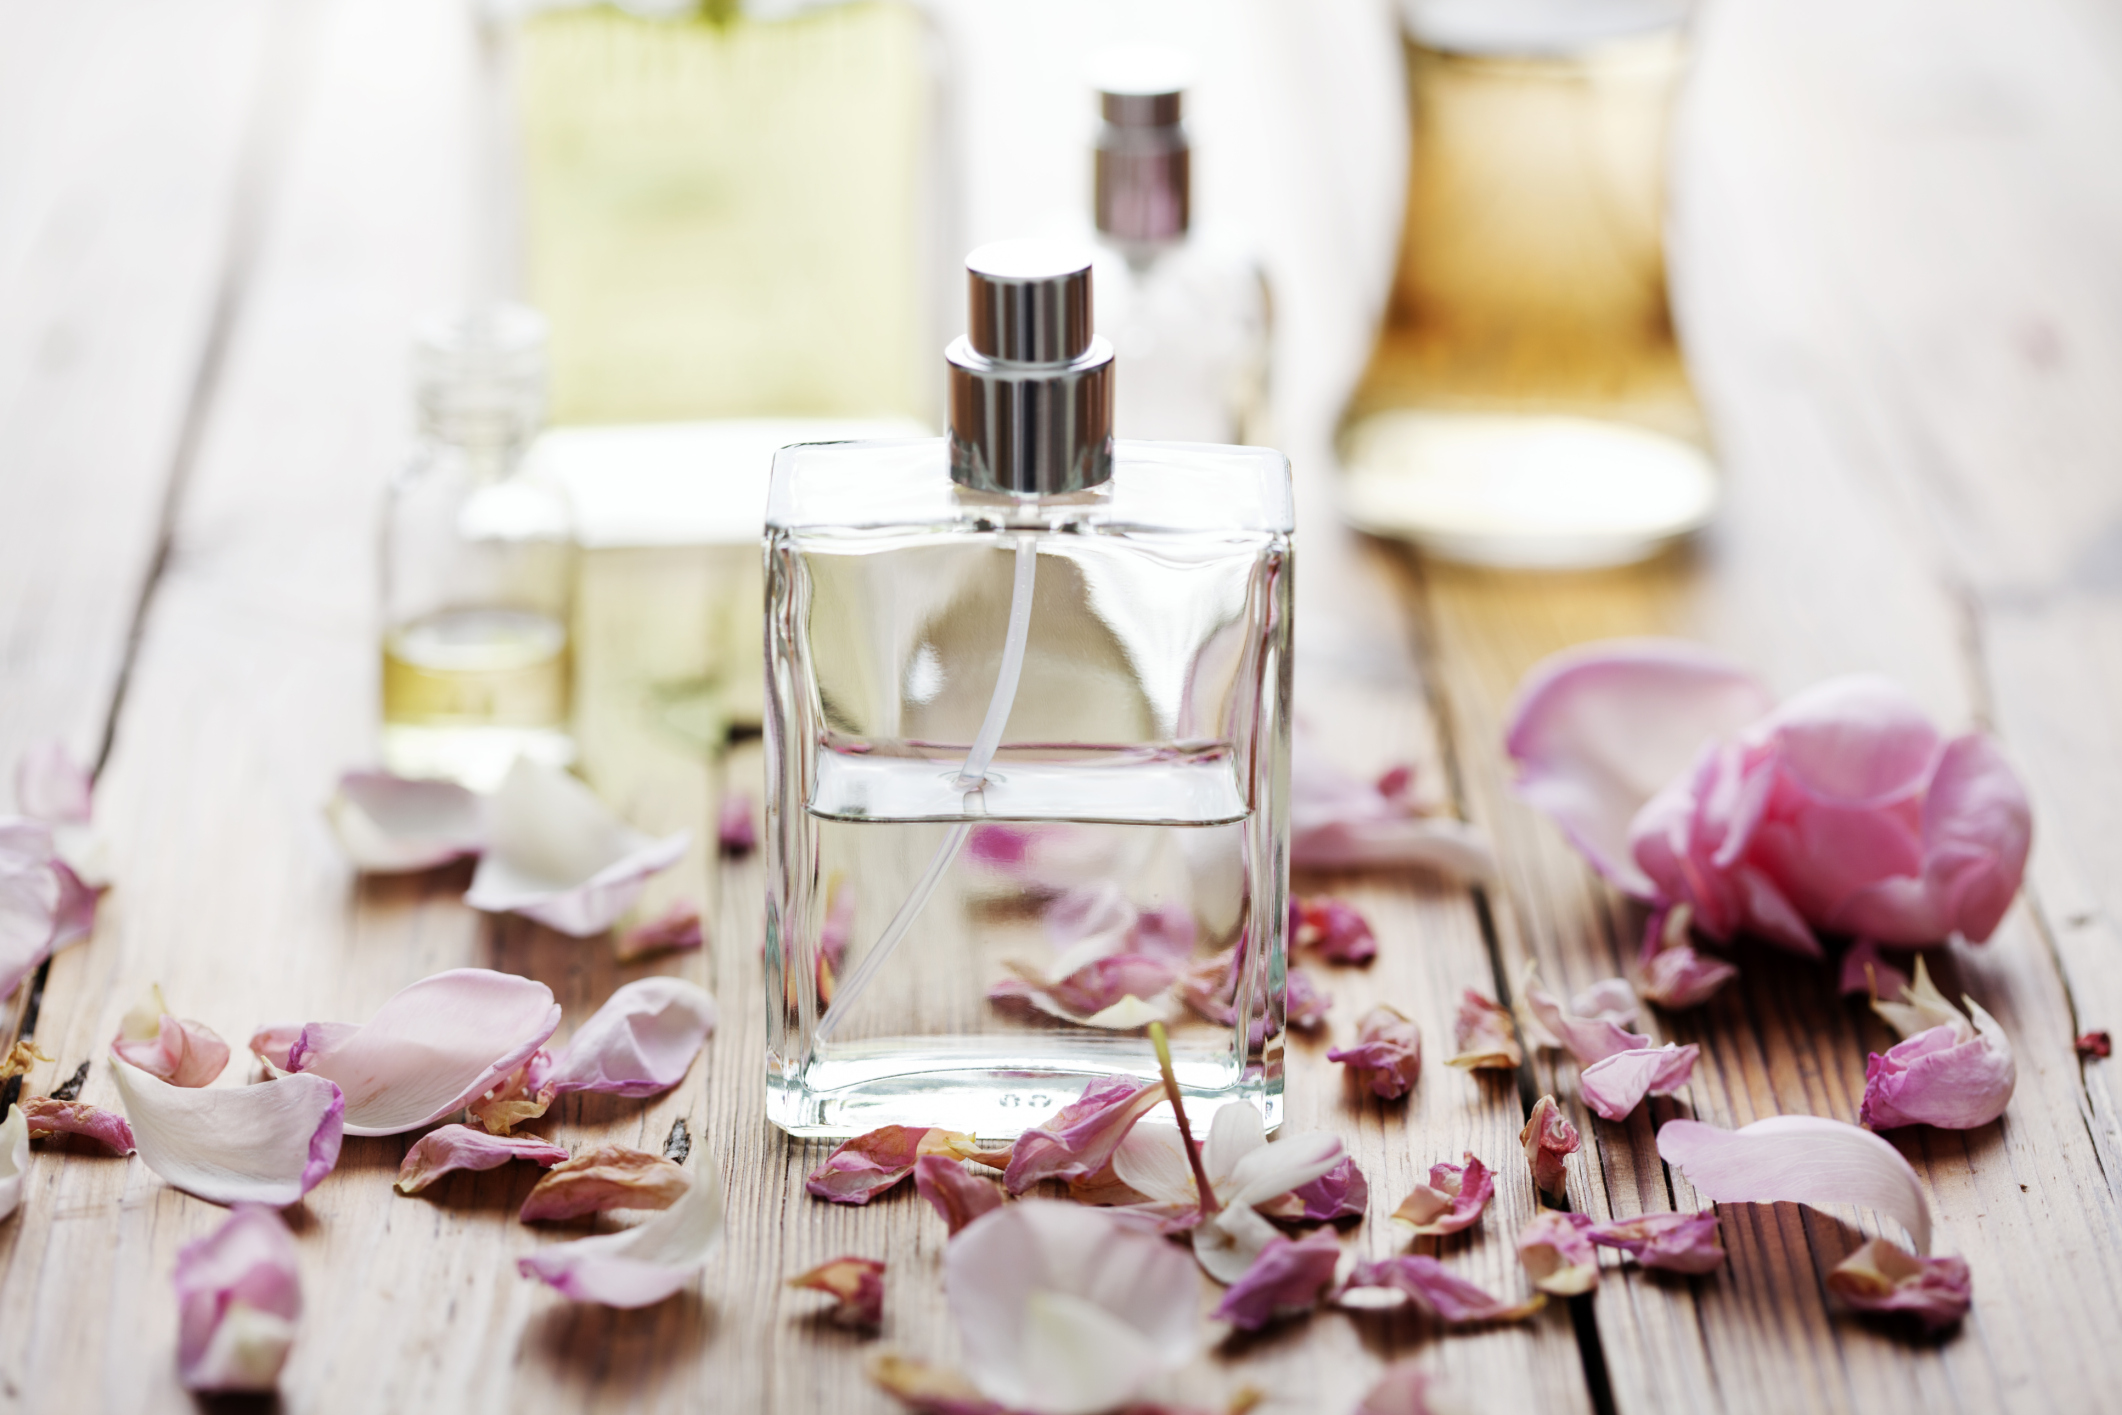 Los exquisitos perfumes nicho, realmente deliciosos, totalmente auténticos y originaless